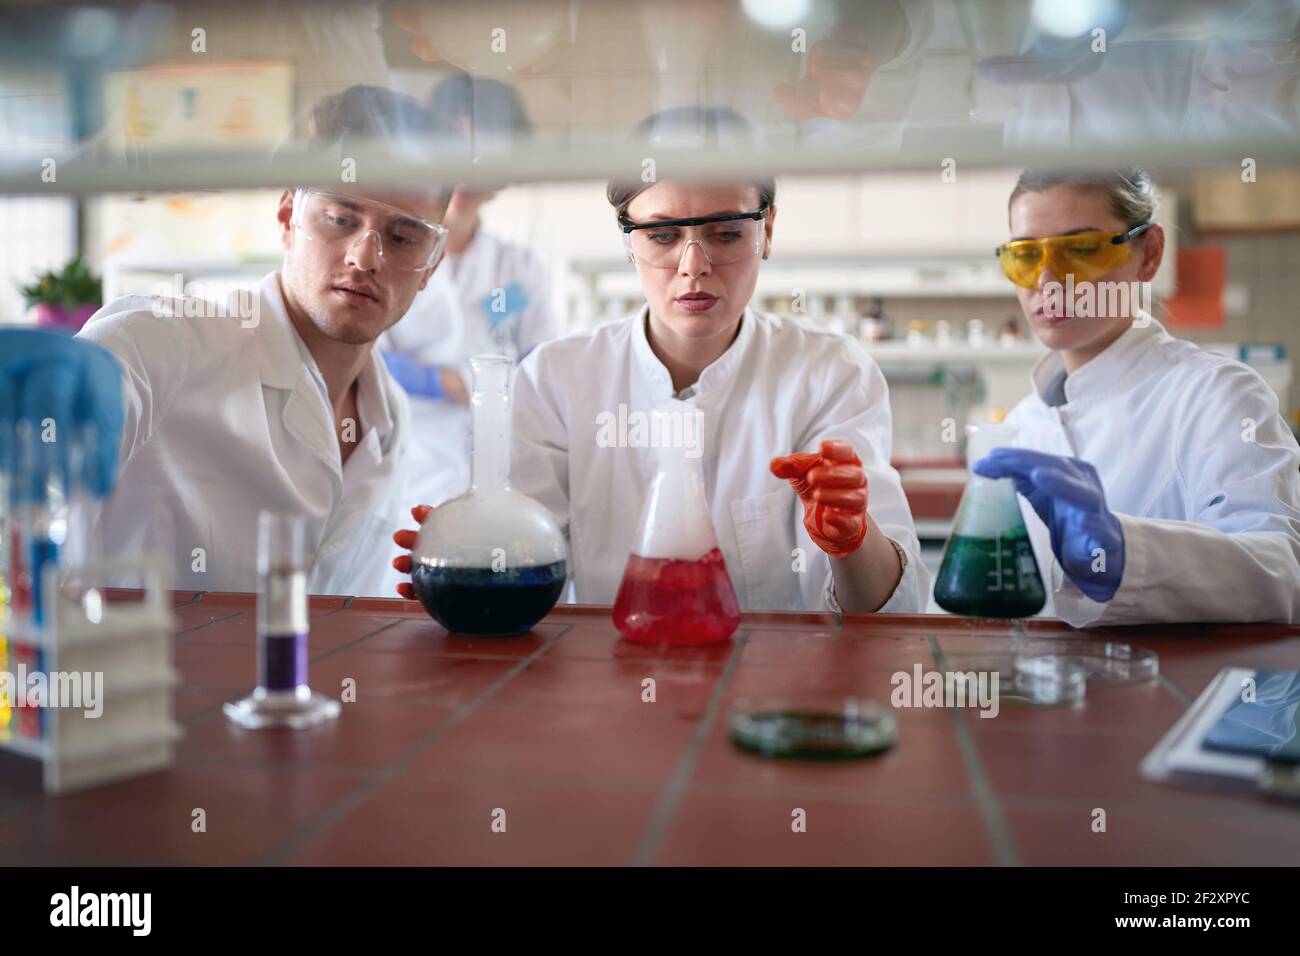 Giovani studenti di chimica lavorano con cautela mentre maneggiano sostanze chimiche pericolose in un'atmosfera di lavoro nel laboratorio universitario. Scienza, chimica Foto Stock